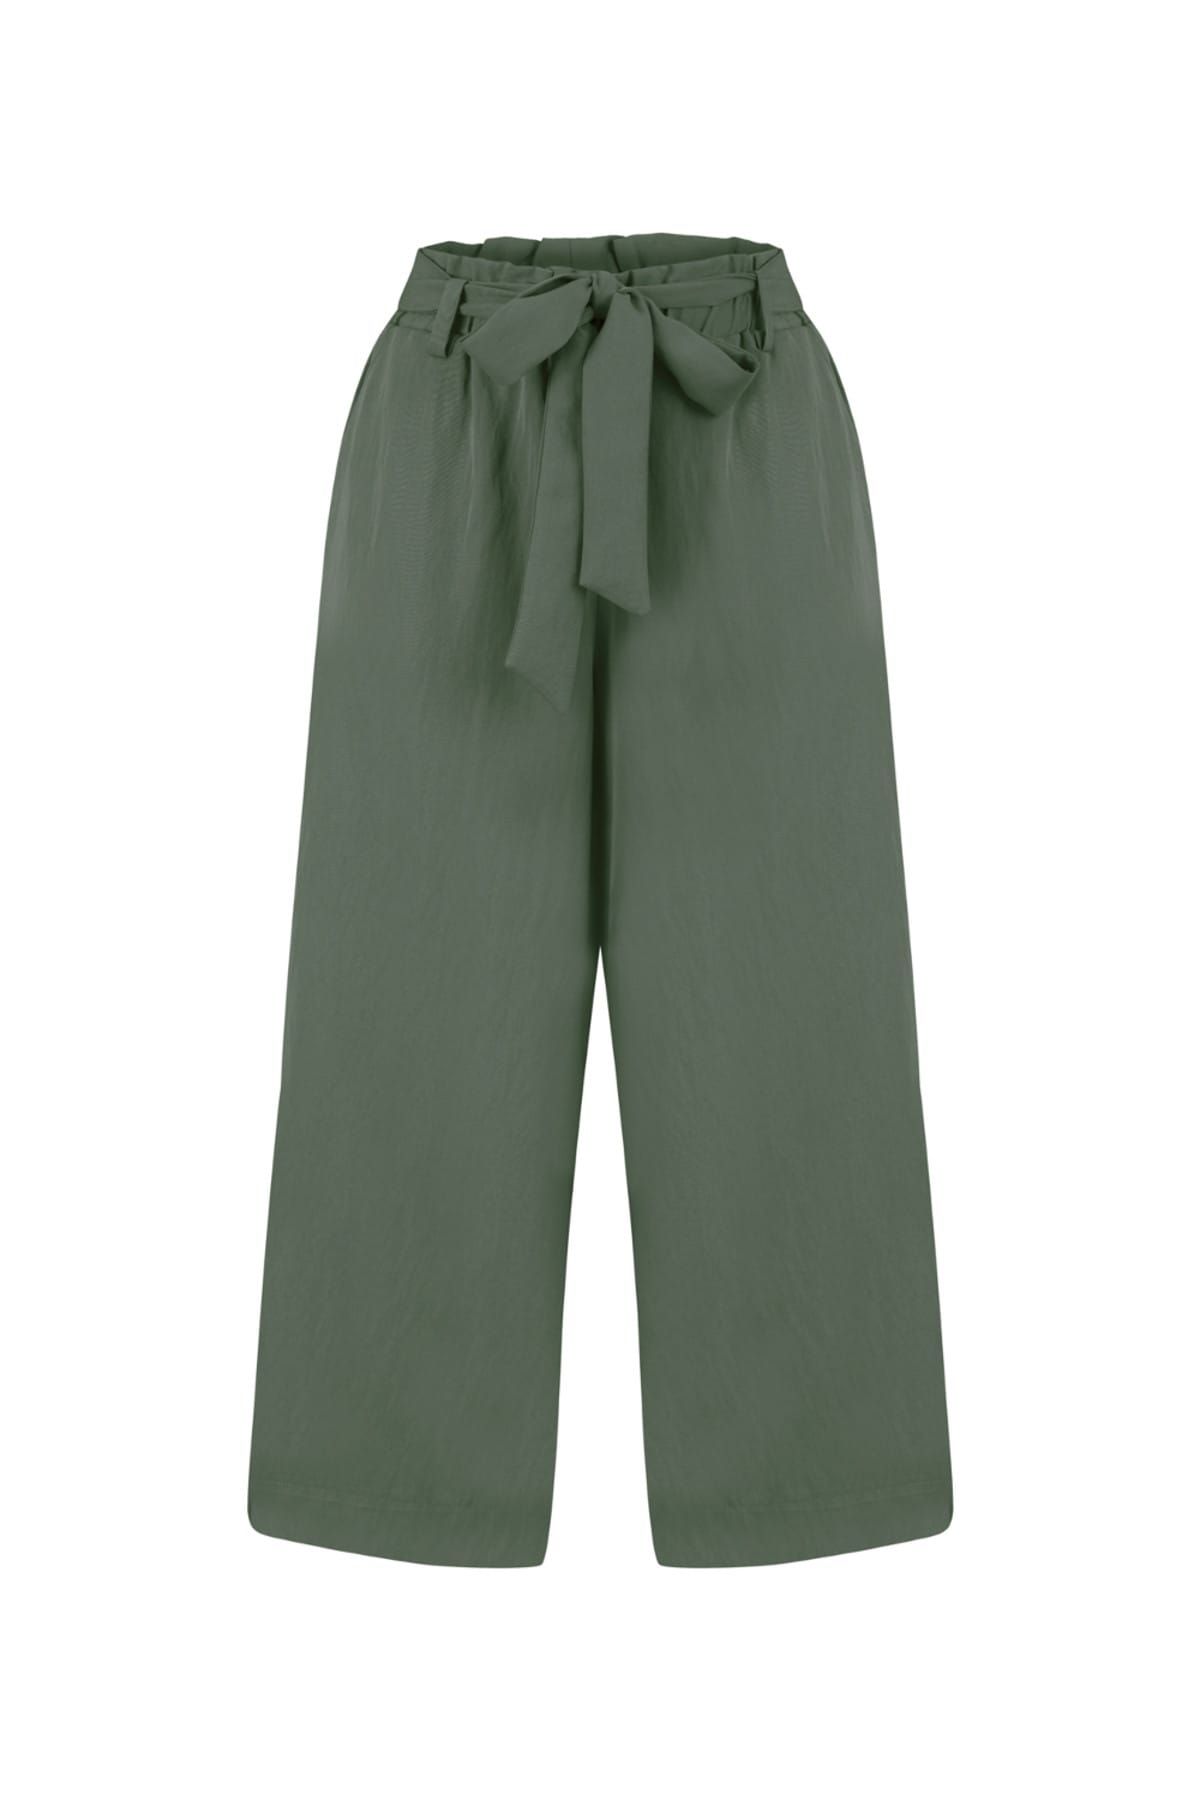 Mudo Kadın Koyu Yeşil Bağlamalı Culotte Pantolon